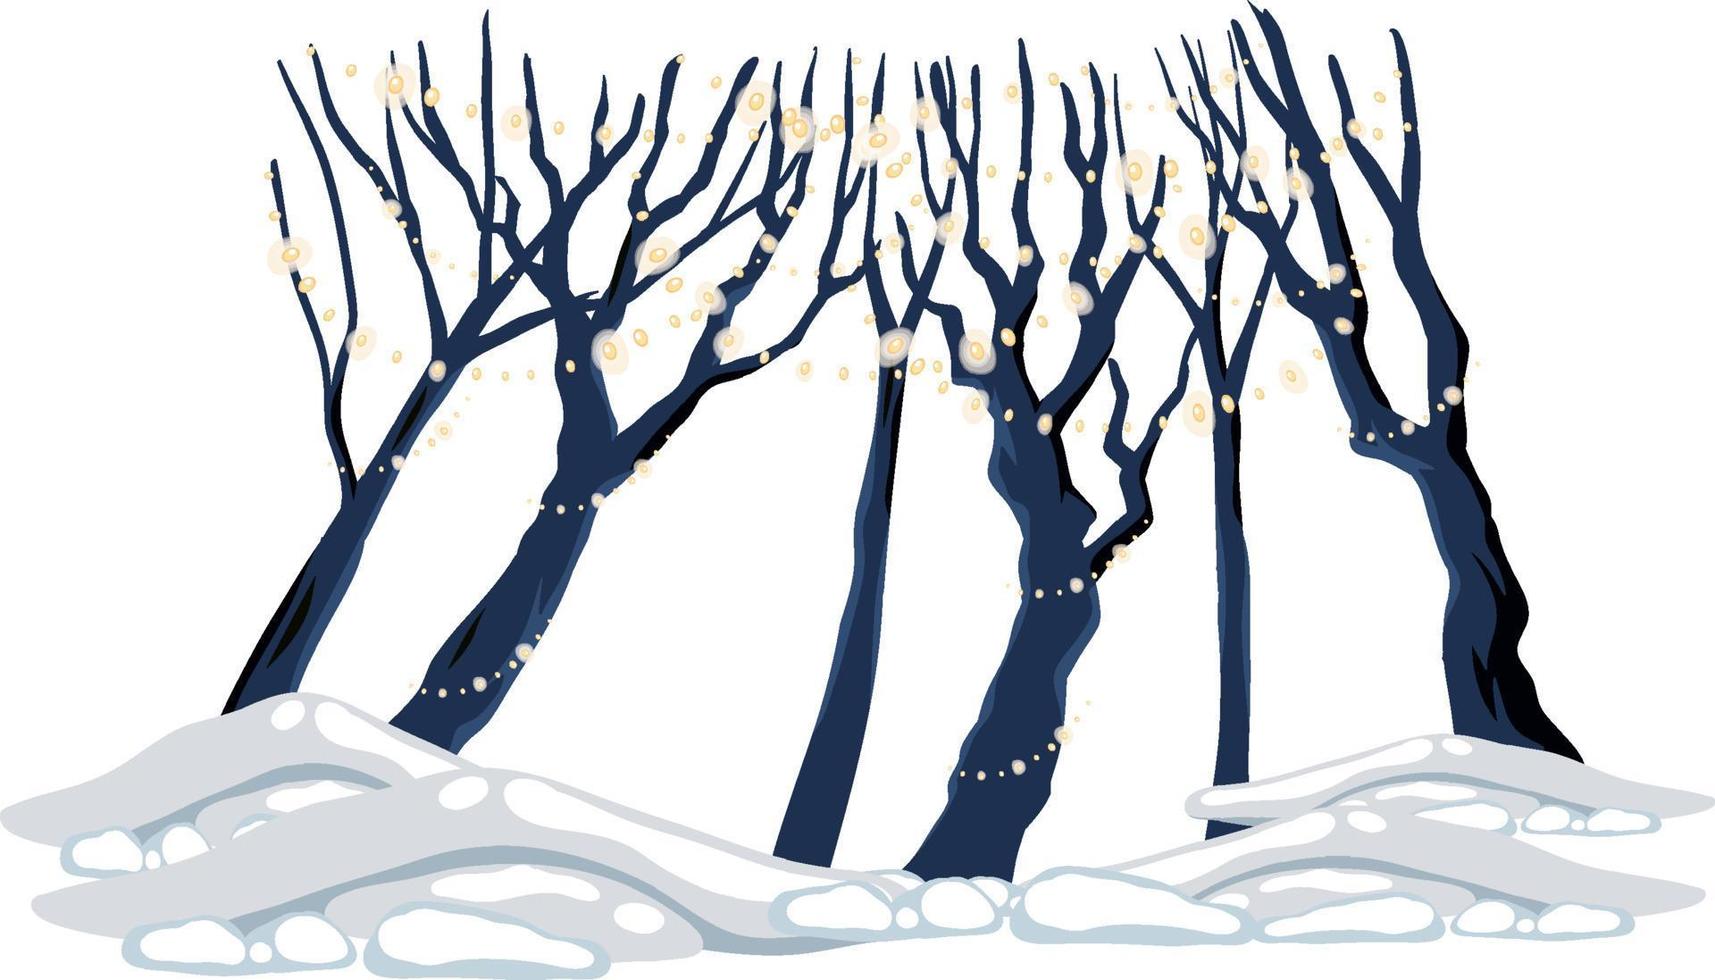 grupp av bladlösa träd med semester ljus och snö marken vektor